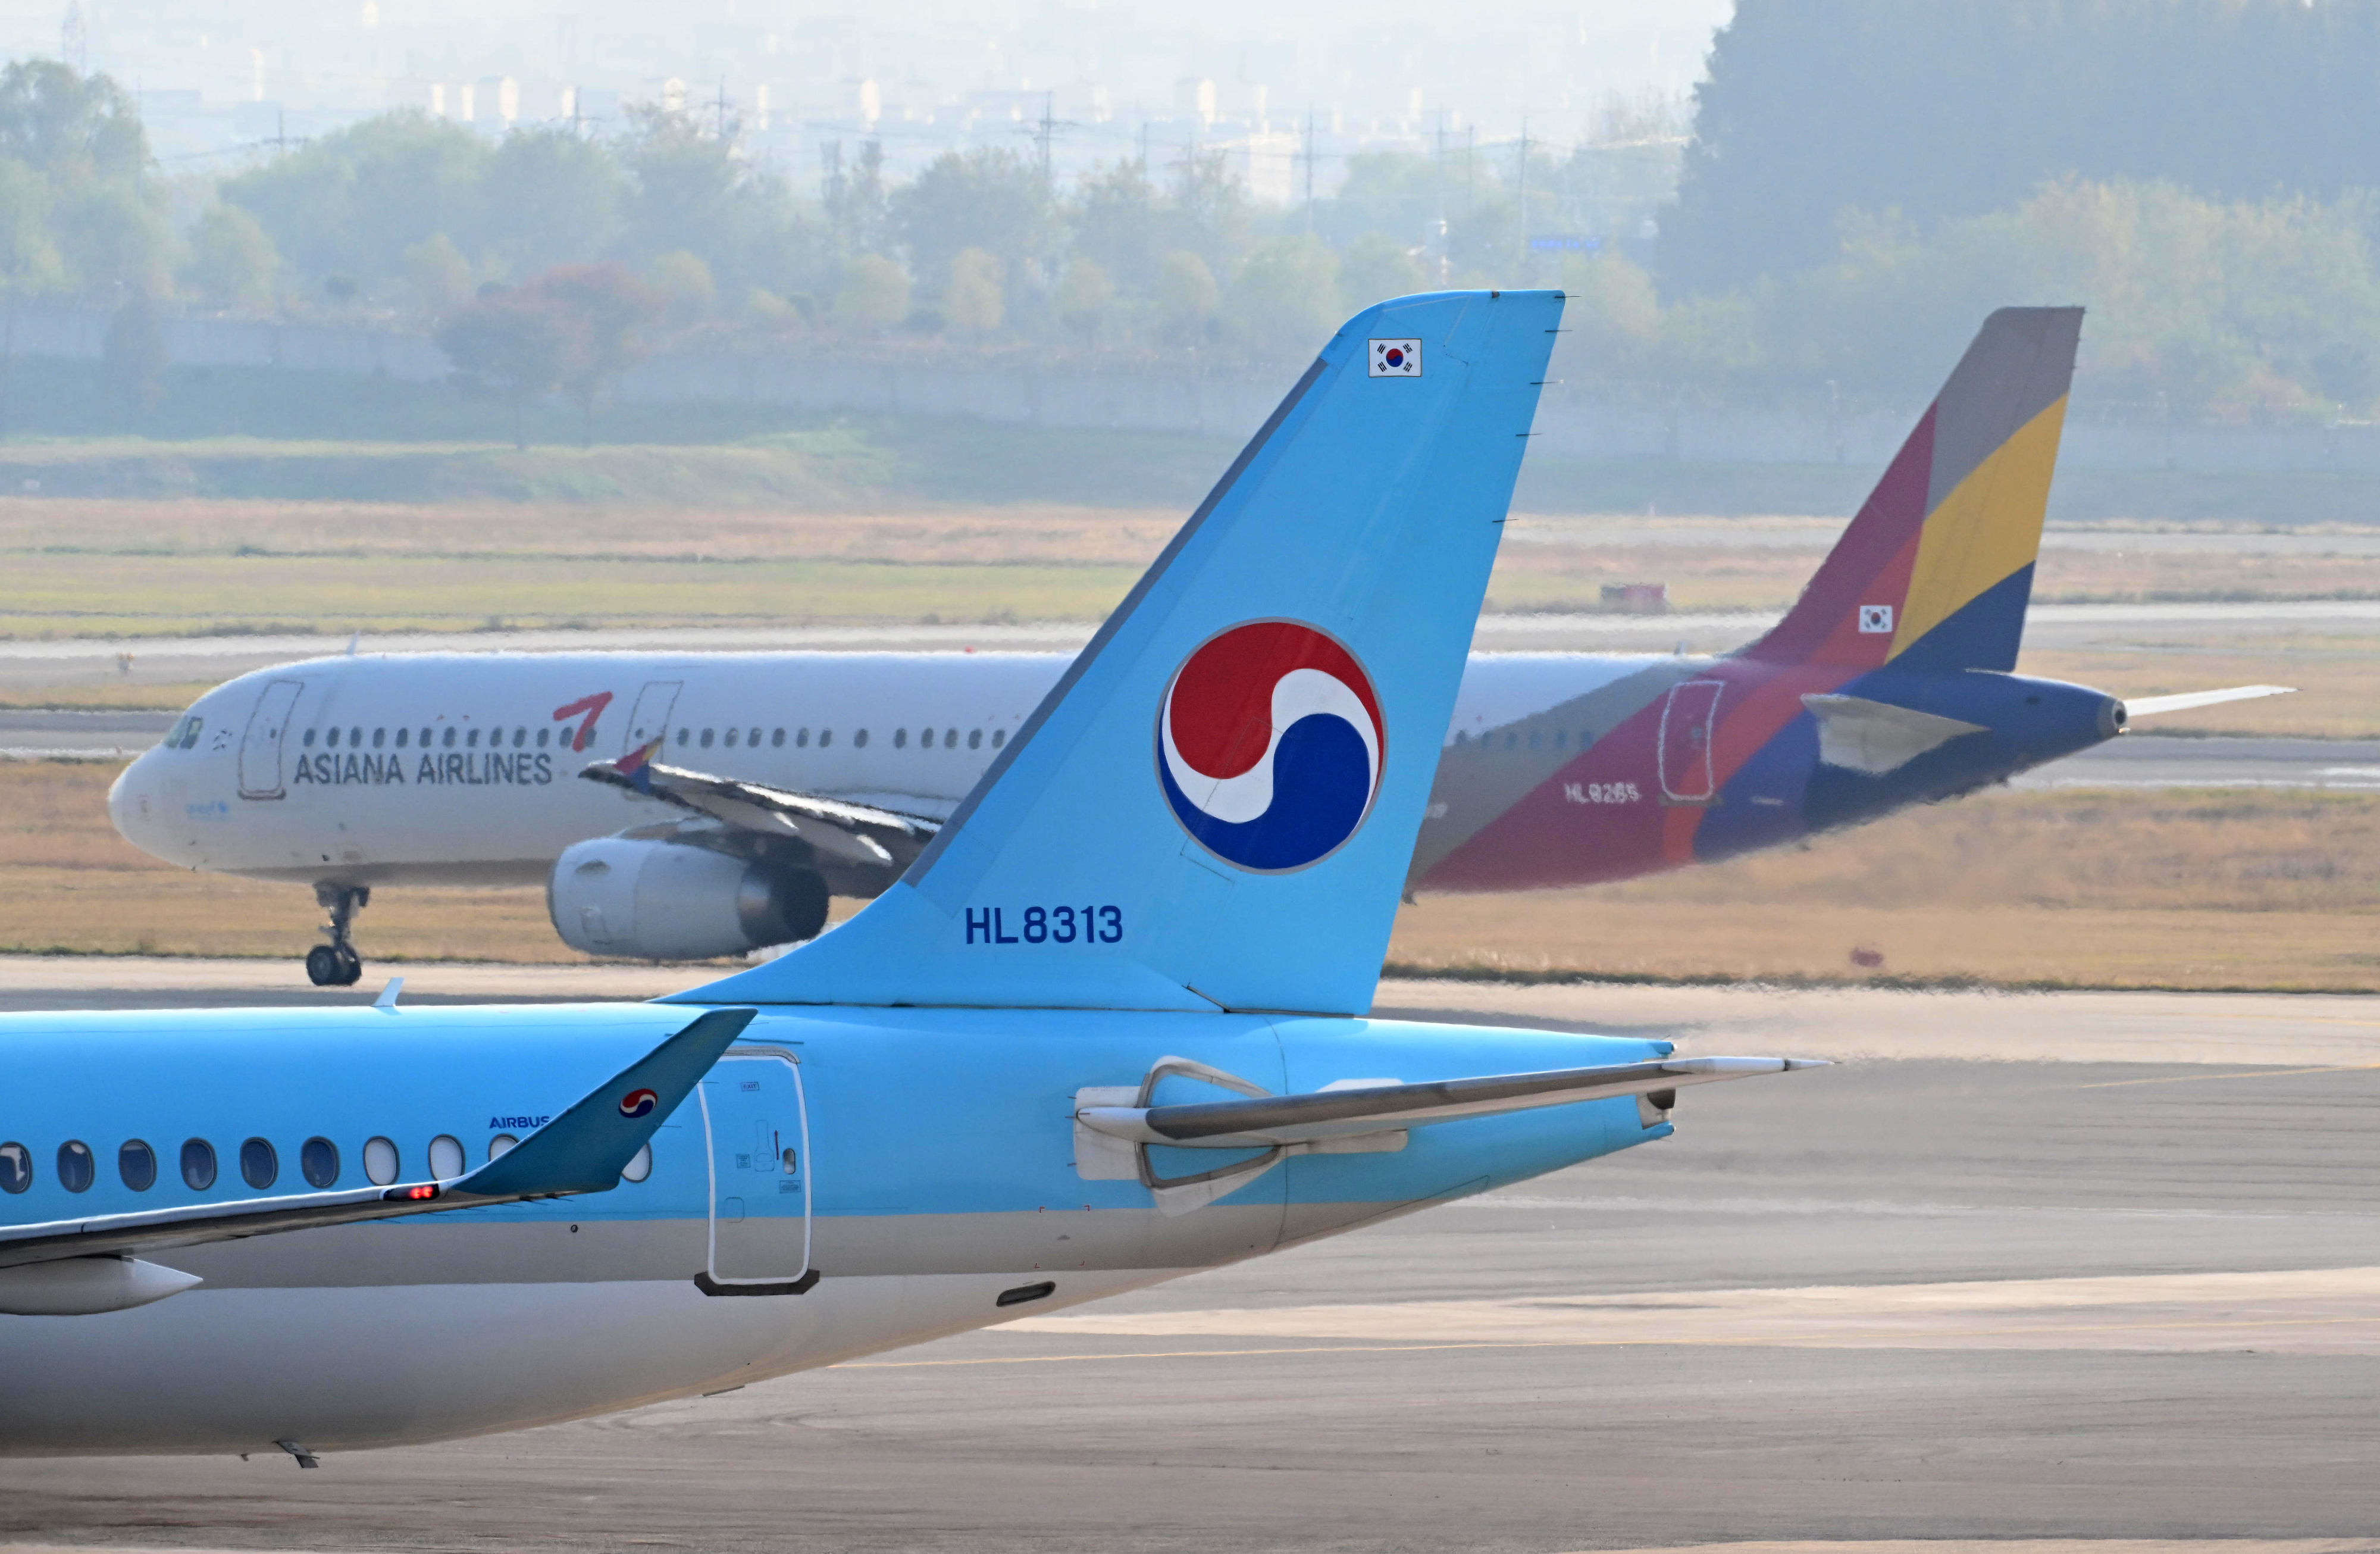 아시아나항공의 화물사업부의 매각 여부를 결정할 이사회가 열린 30일 오후 김포공항 국내선에 대한항공과 아시아나 비행기들이 보이고 있다. 2023.10.30. 도준석 기자